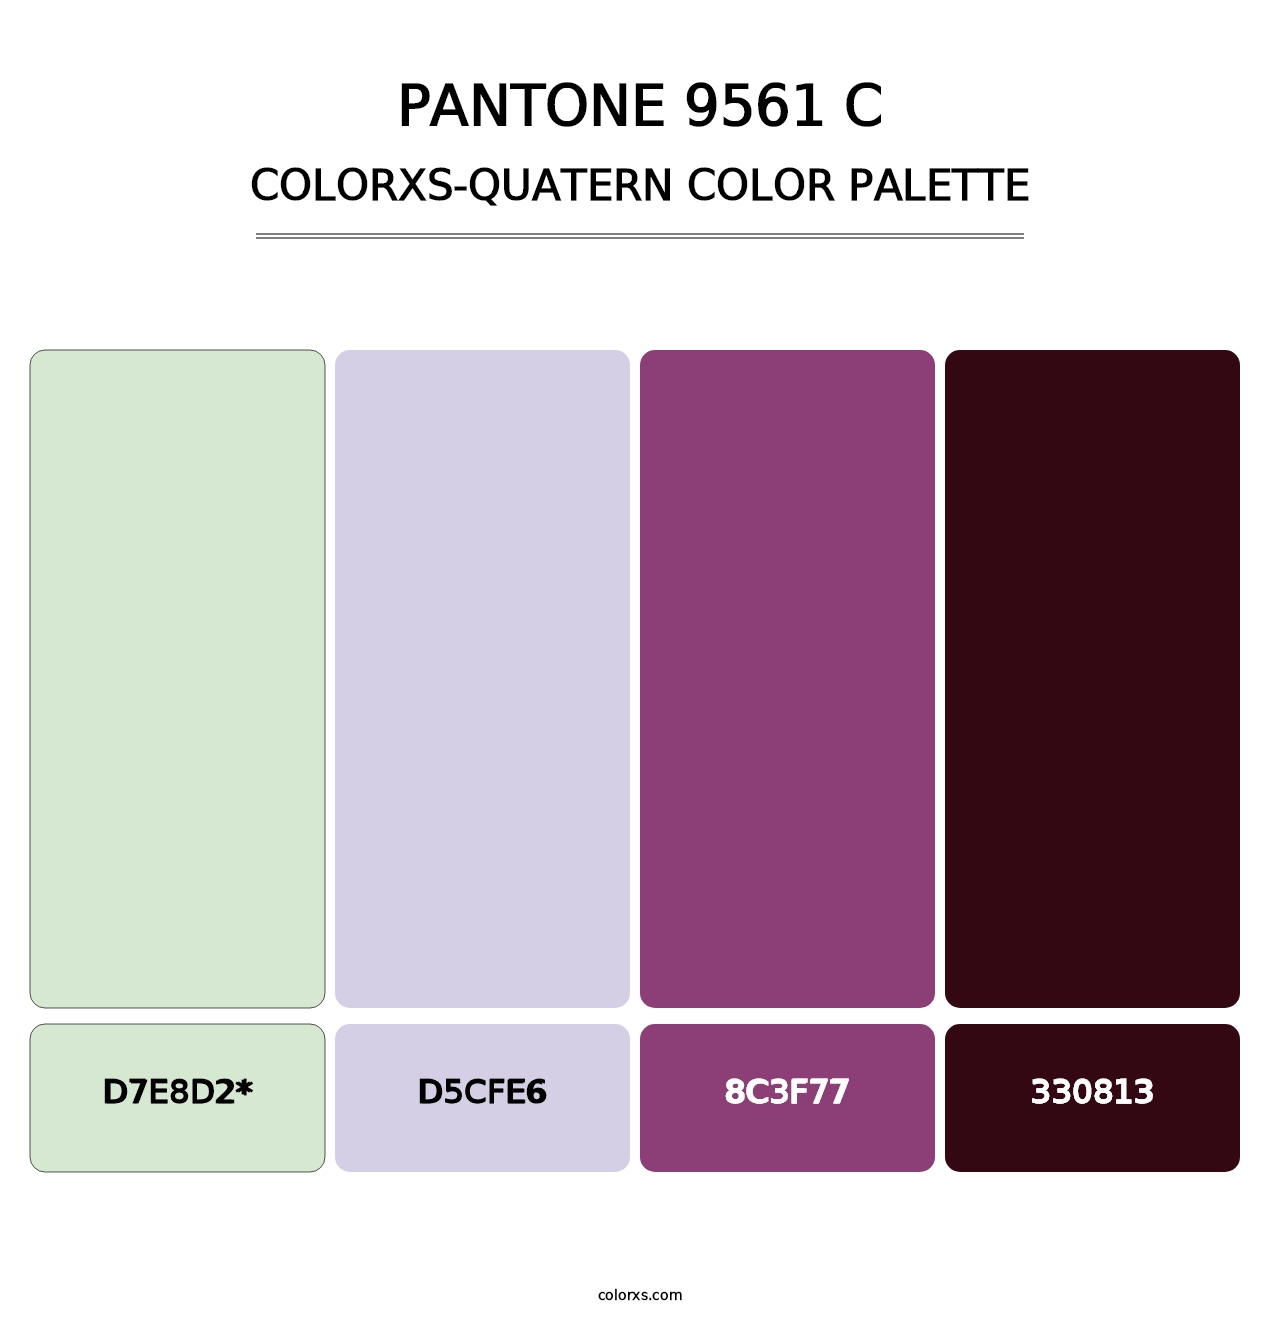 PANTONE 9561 C - Colorxs Quatern Palette